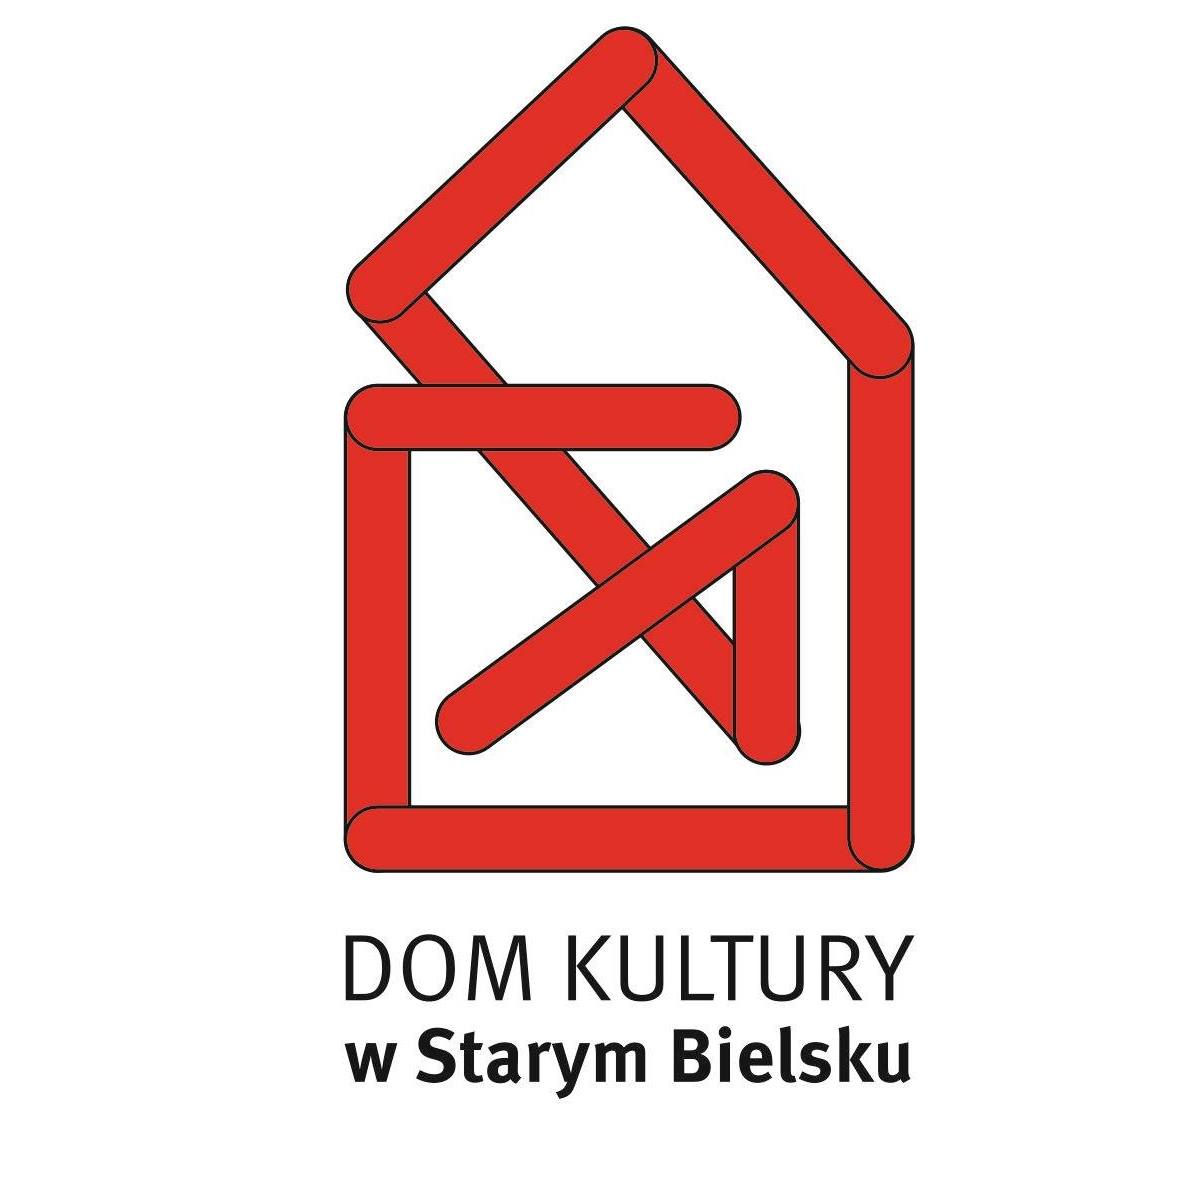  Tramway Kulturalny: Na co światu Kurdowie Na zdjęciu logo DK